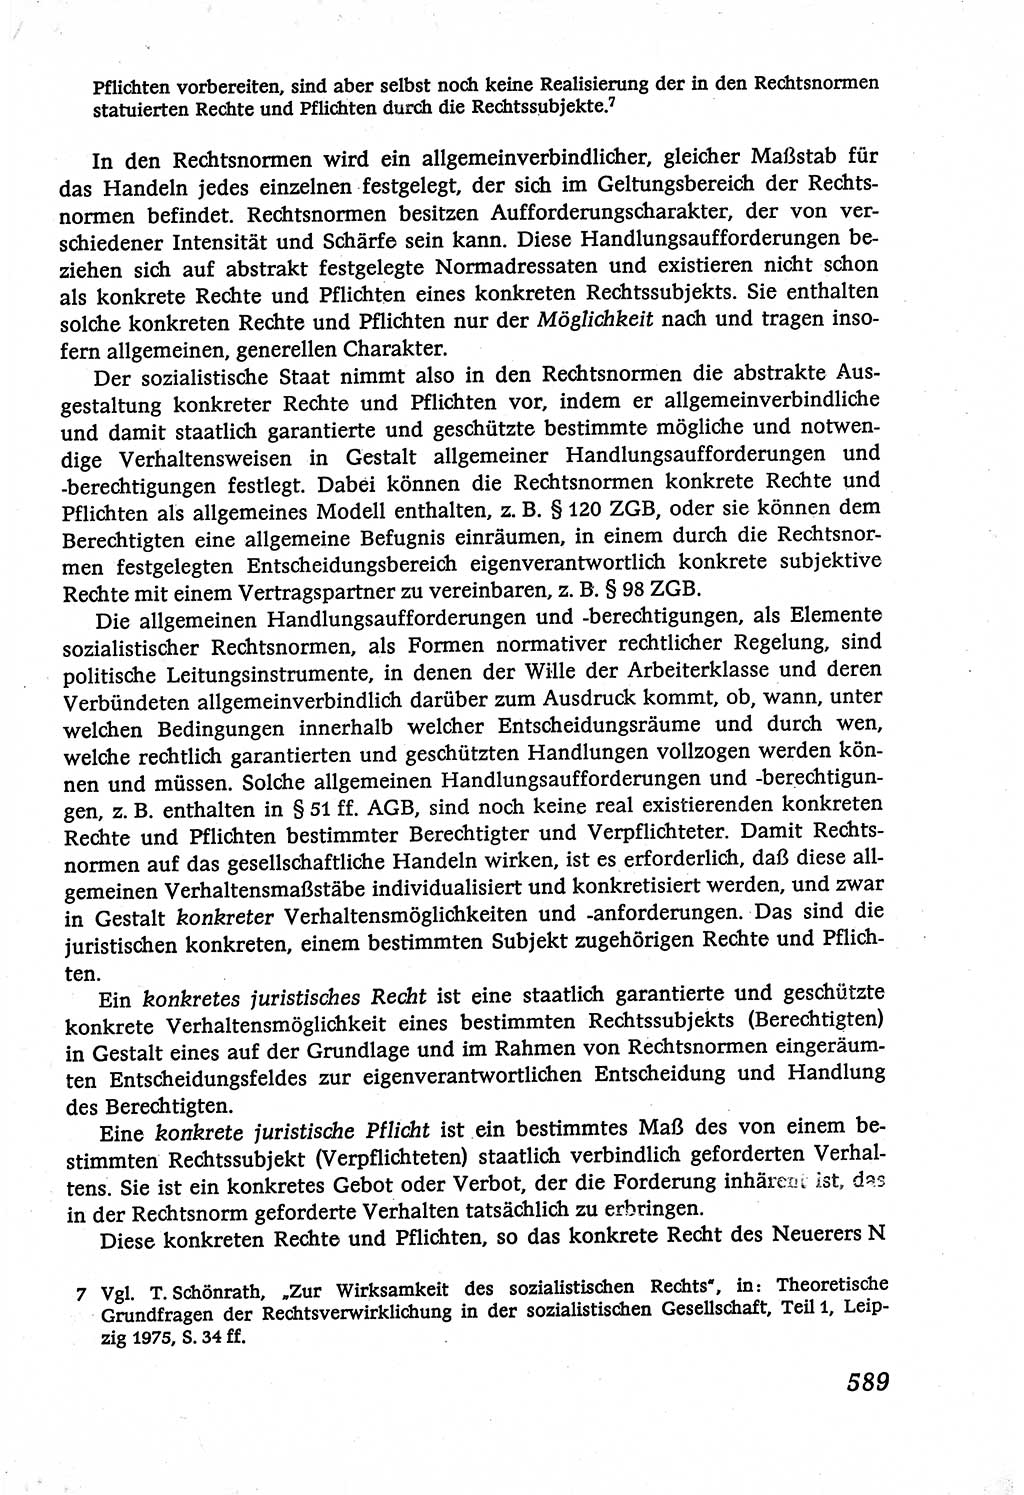 Marxistisch-leninistische (ML) Staats- und Rechtstheorie [Deutsche Demokratische Republik (DDR)], Lehrbuch 1980, Seite 589 (ML St.-R.-Th. DDR Lb. 1980, S. 589)